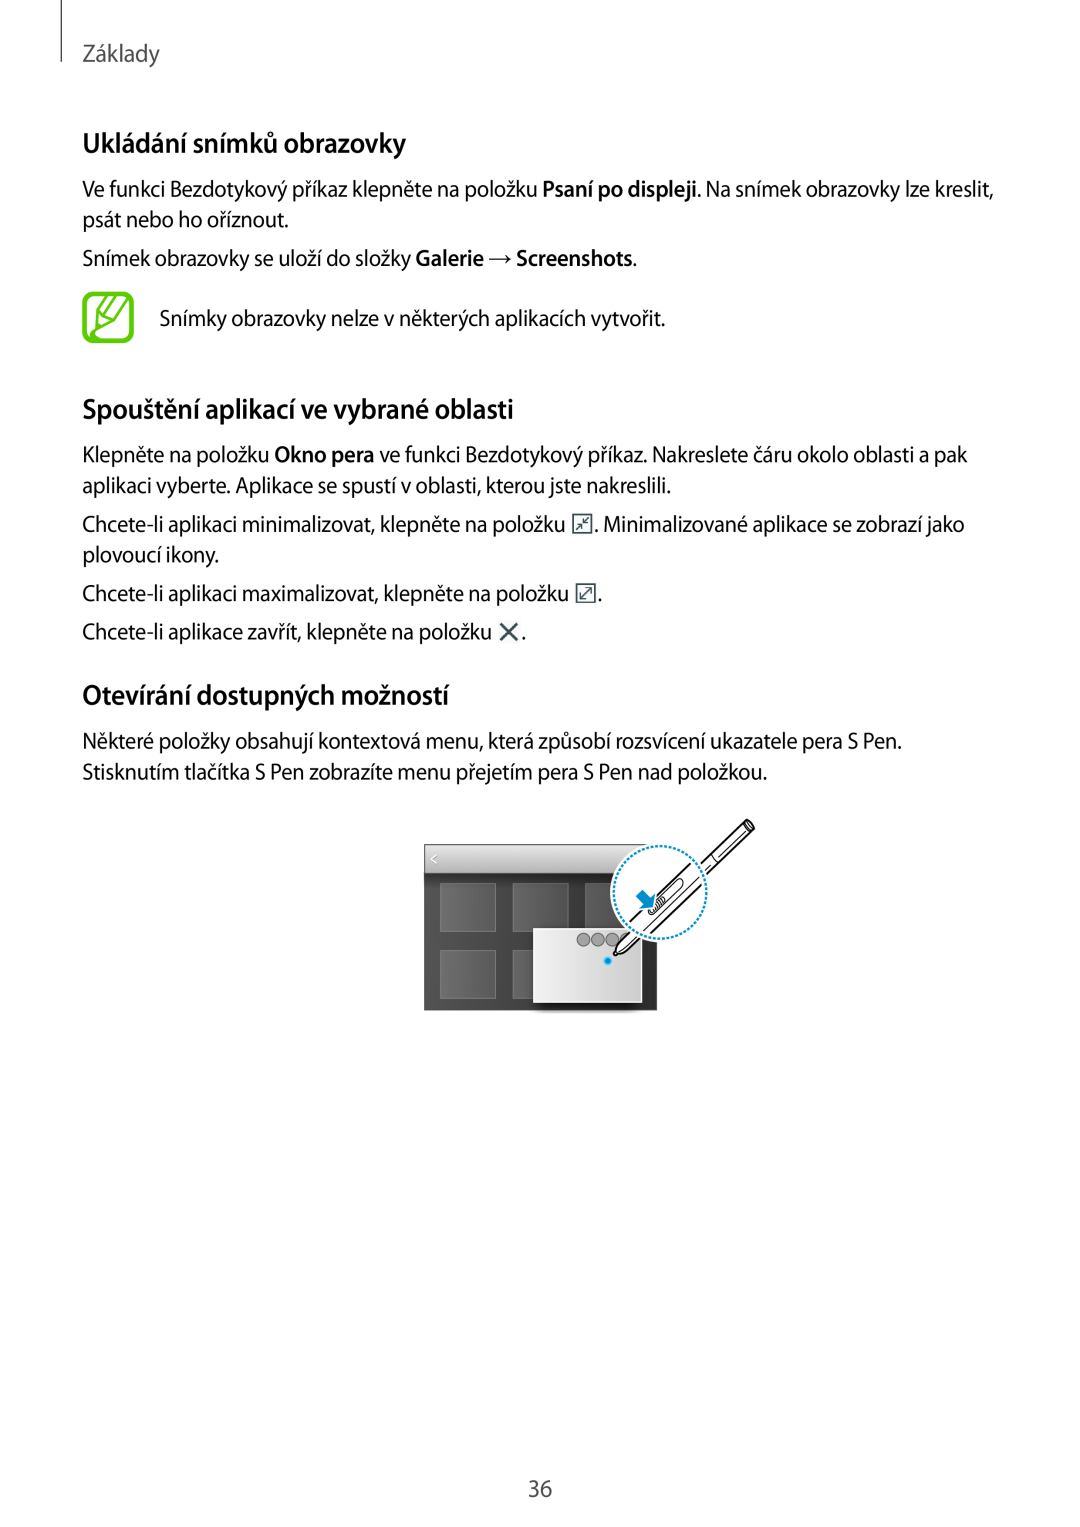 Samsung SM-P9050ZWAXEH Ukládání snímků obrazovky, Spouštění aplikací ve vybrané oblasti, Otevírání dostupných možností 